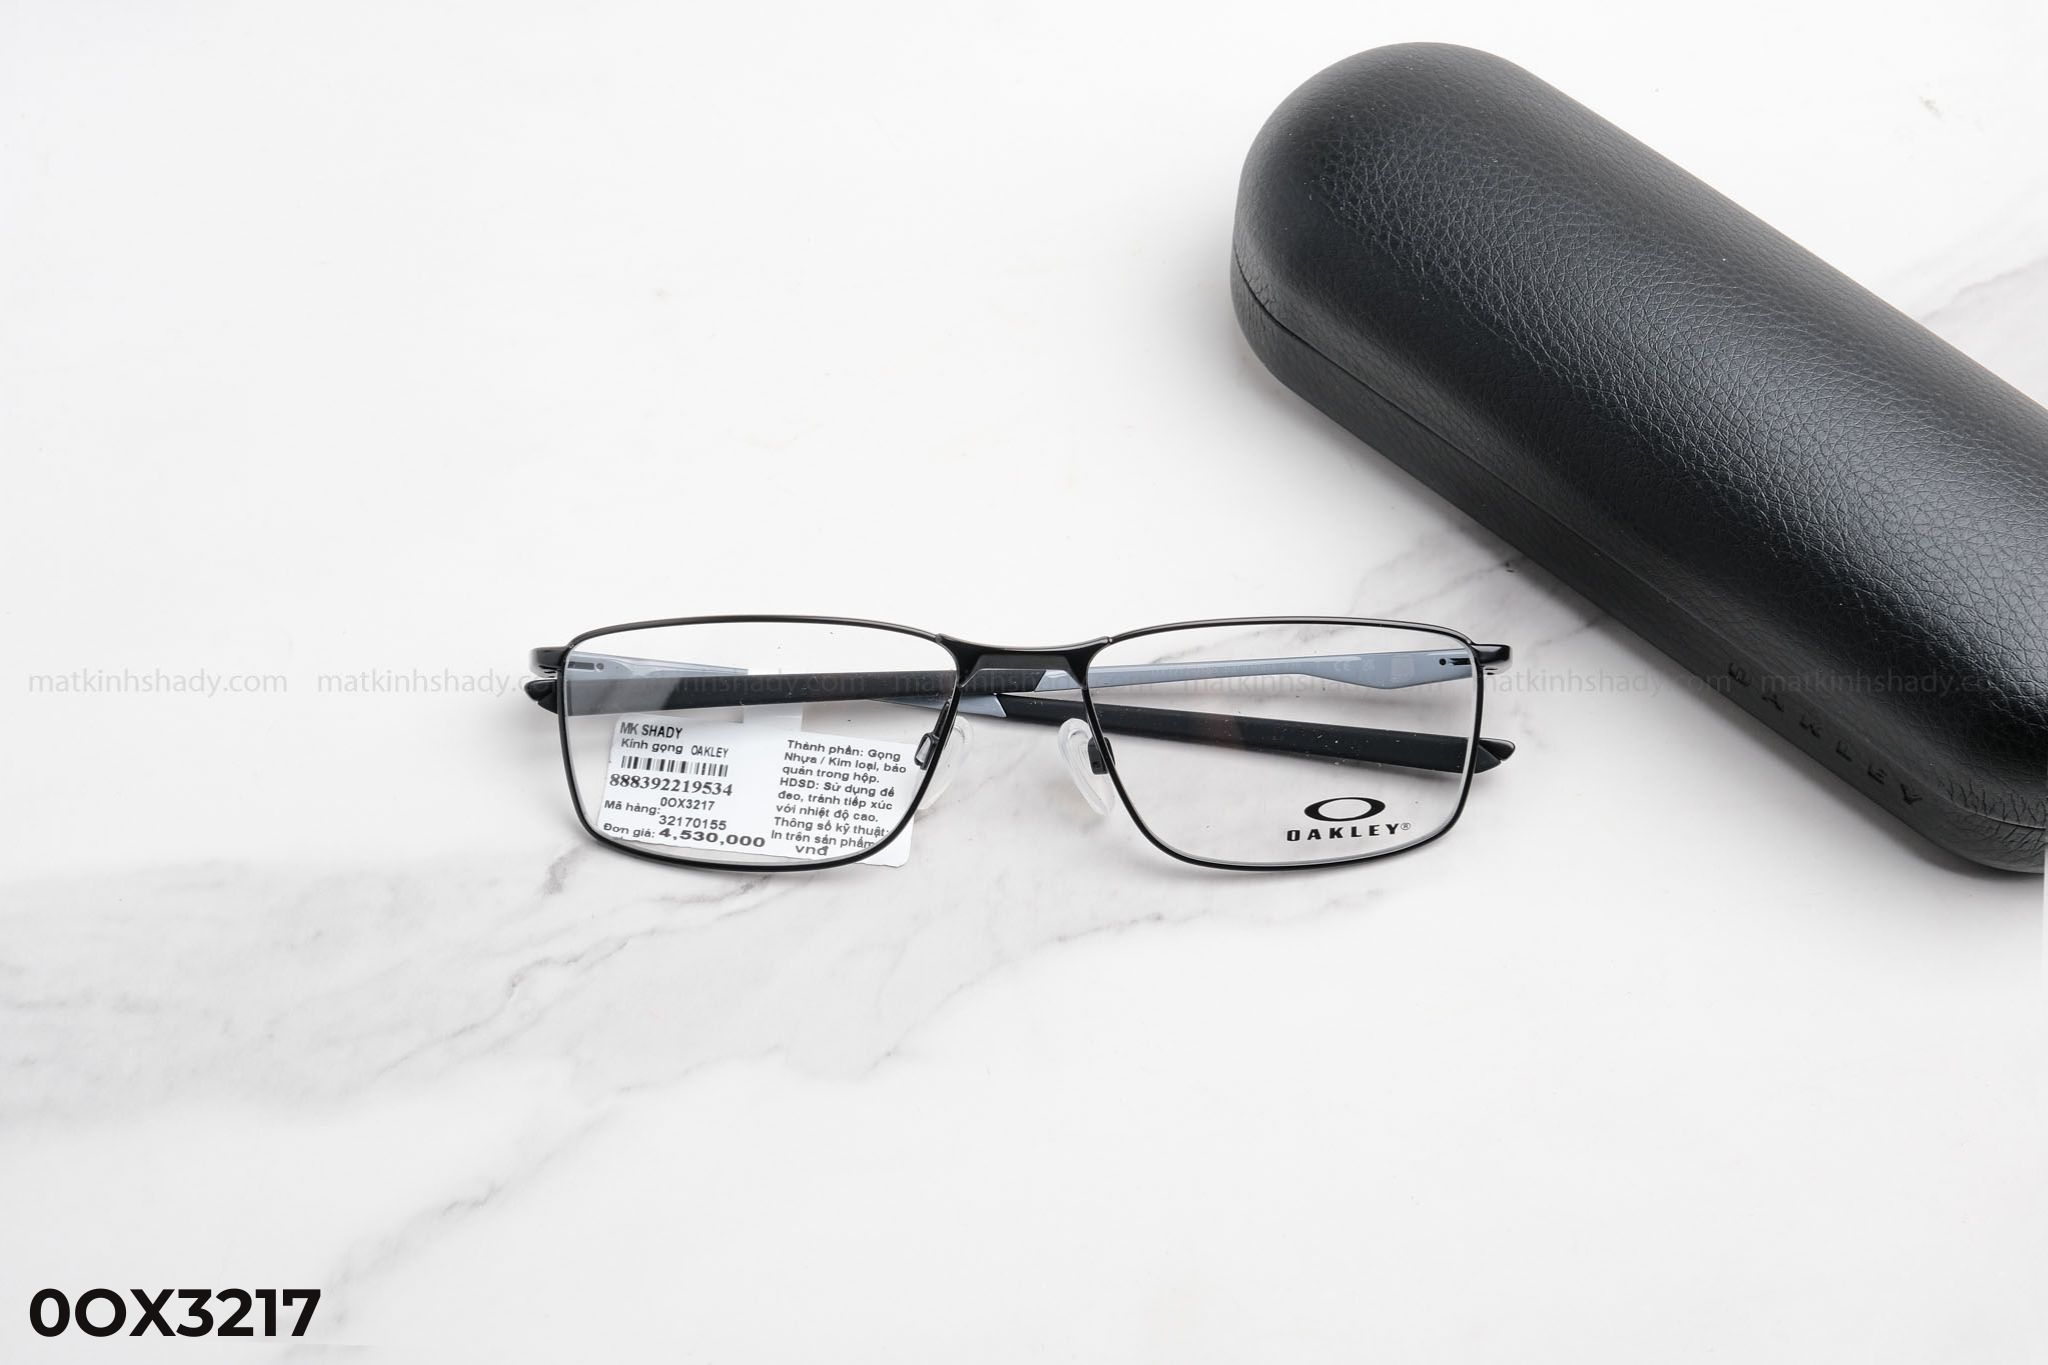  Oakley Eyewear - Glasses - 0OX3217 